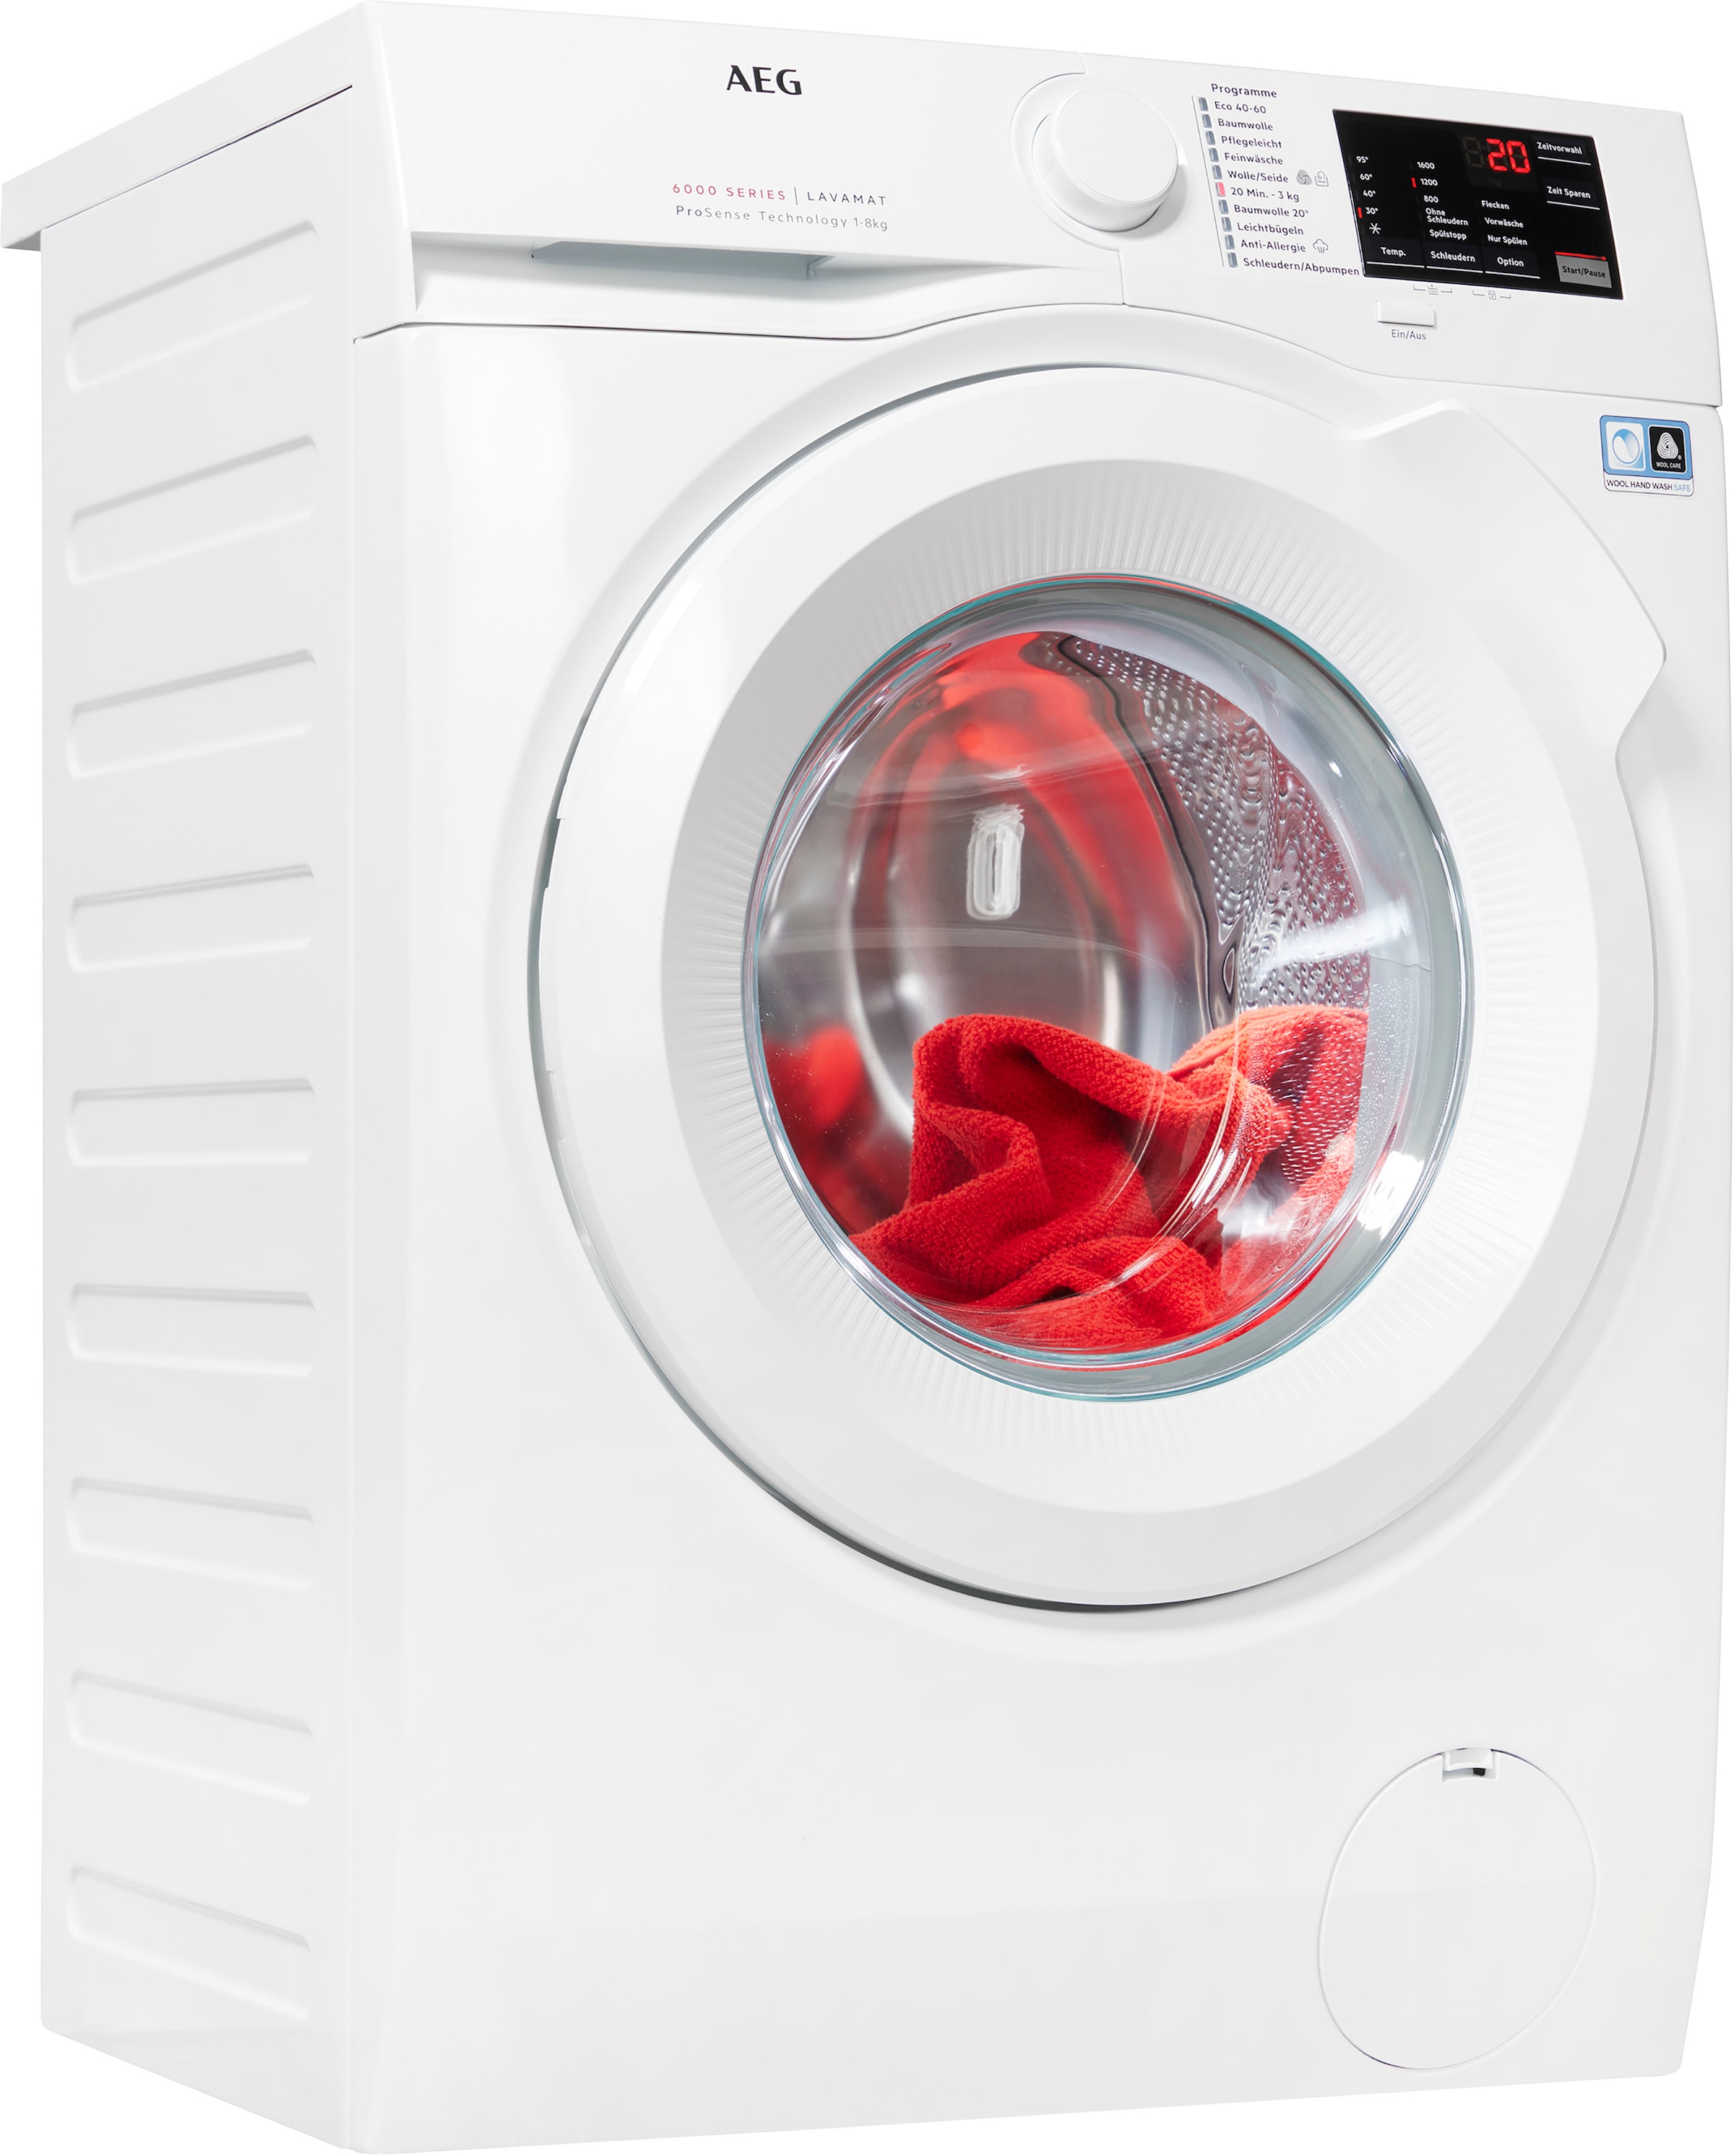 AEG Waschmaschine, Serie 6000, L6FB680FL, kg, kaufen 8 bei OTTO U/min 1600